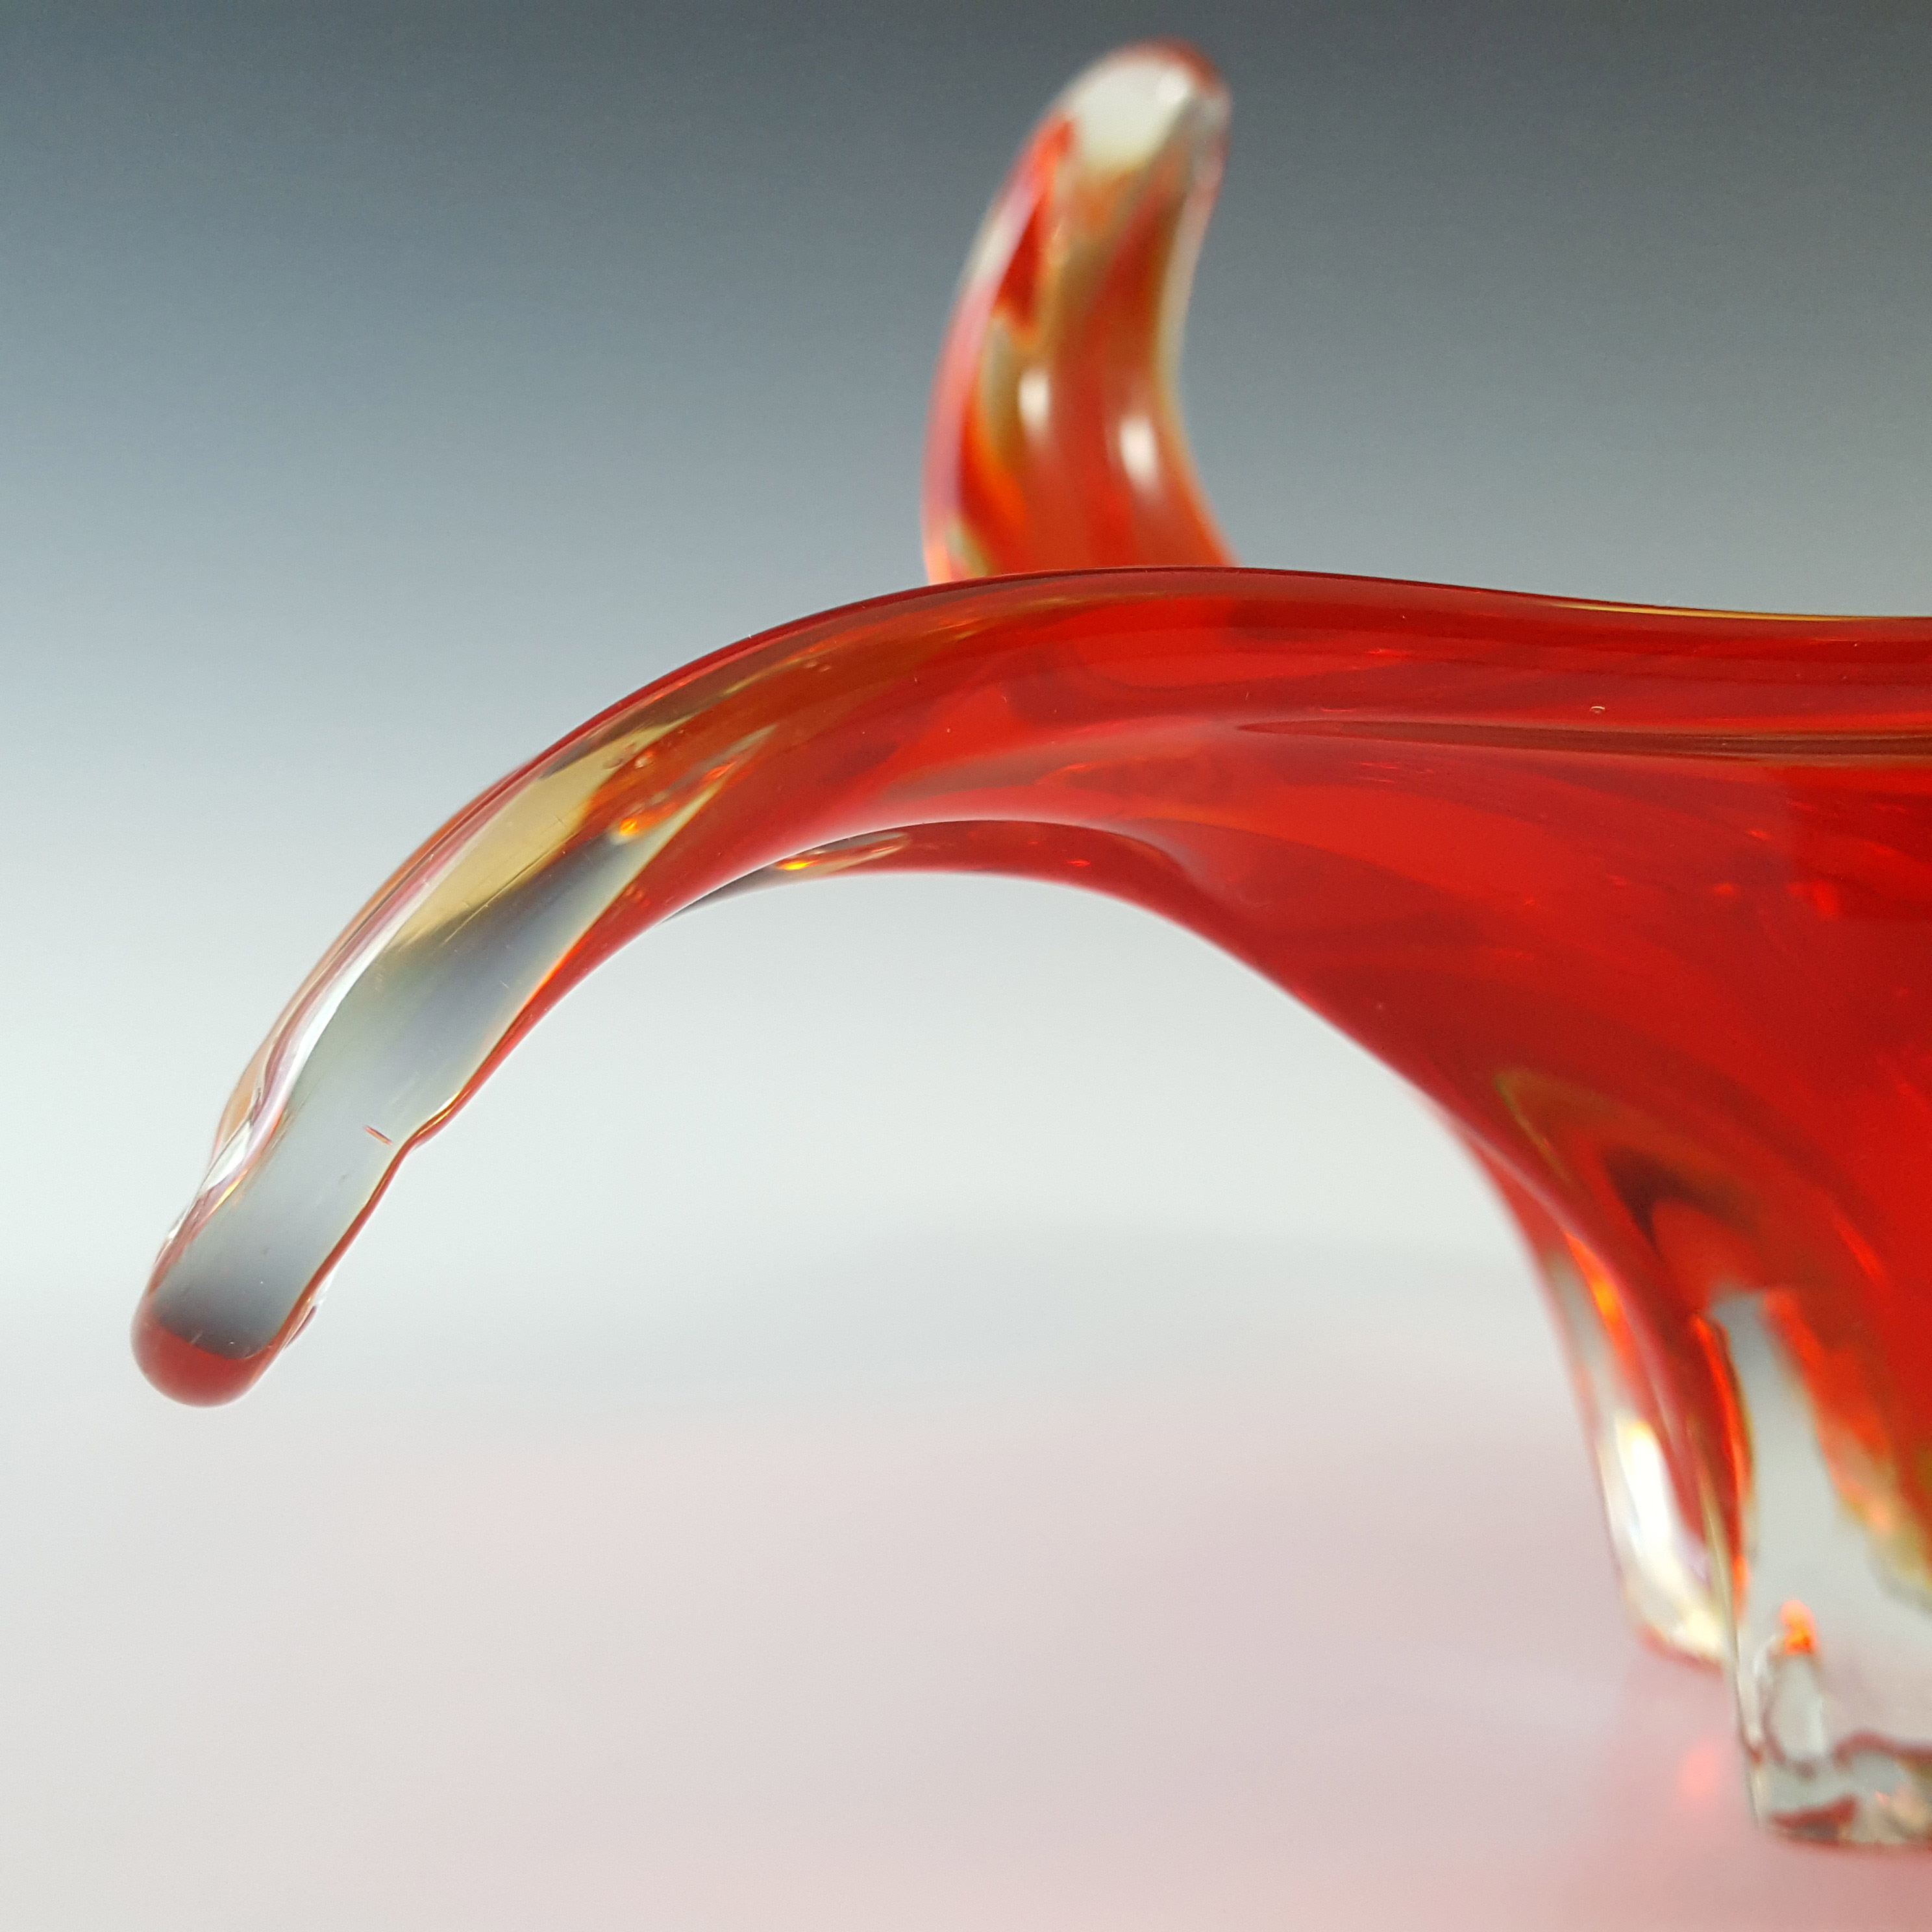 Cristallo Venezia Murano Red & Uranium Green Sommerso Glass Bowl - Click Image to Close